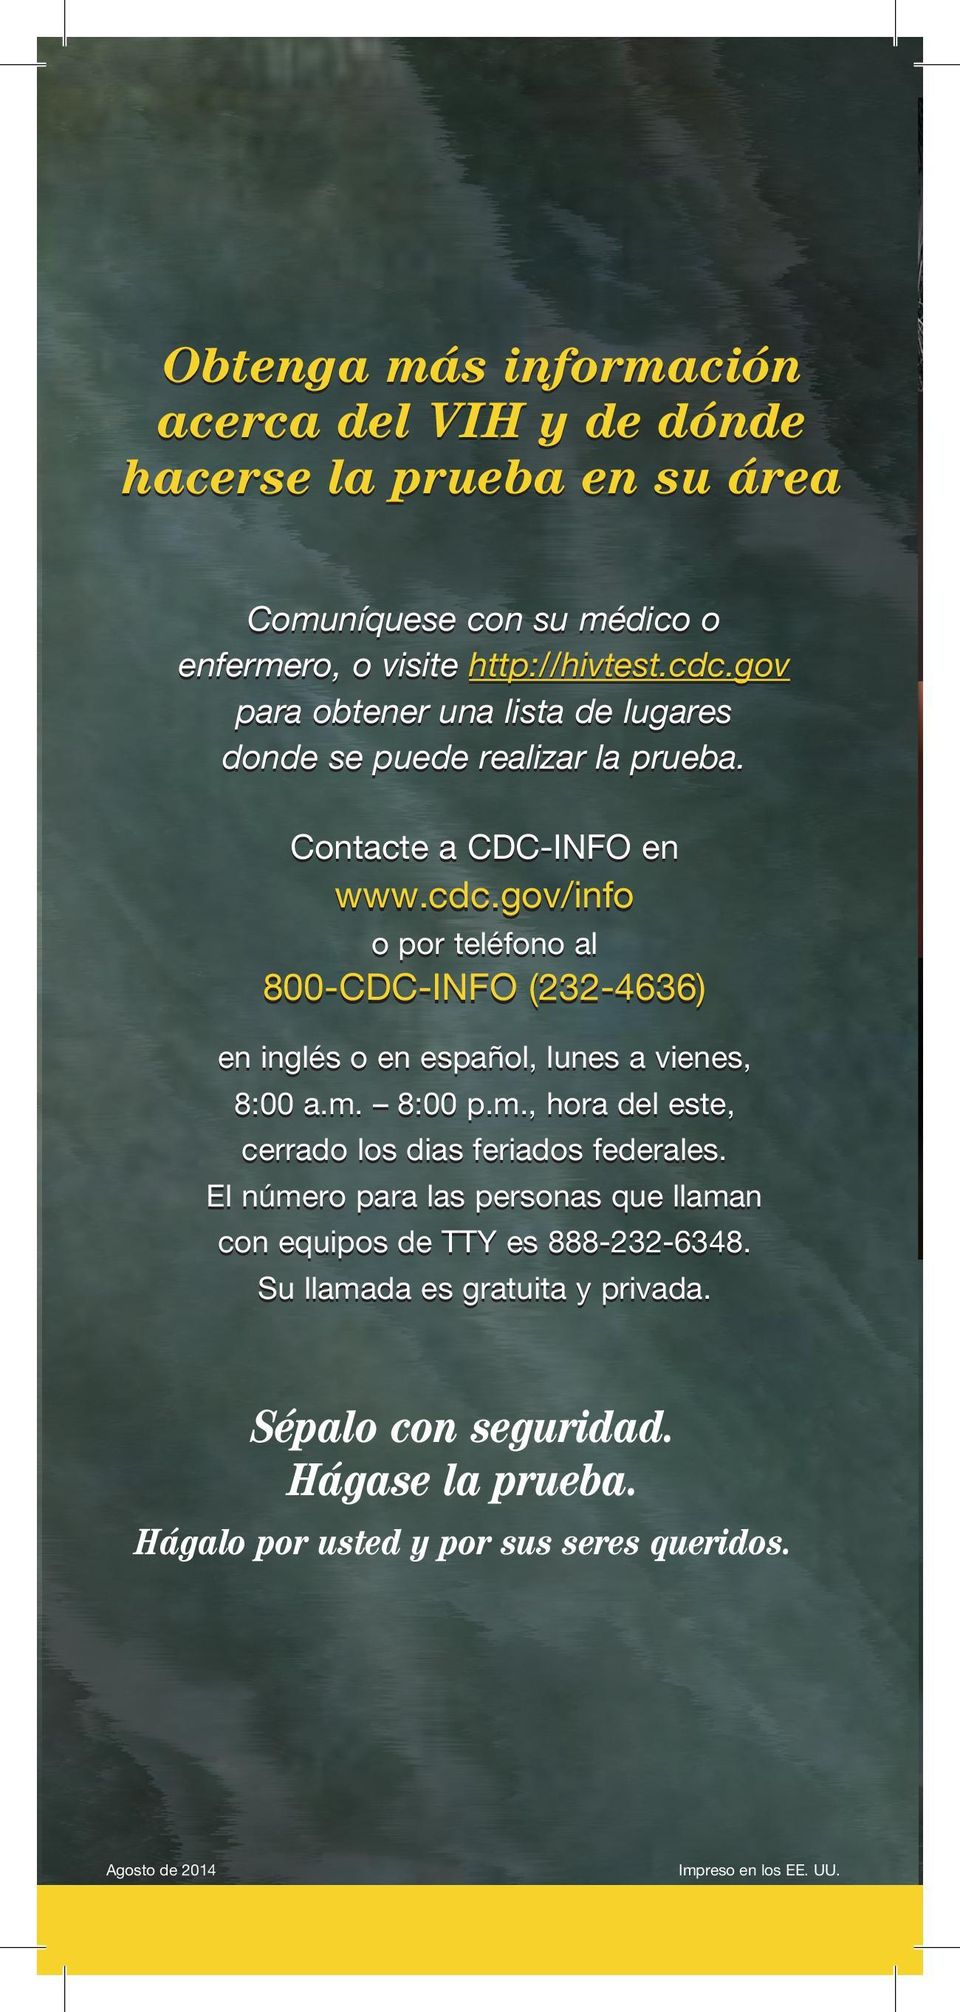 gov/info o por teléfono al 800-CDC-INFO (232-4636) en inglés o en español, lunes a vienes, 8:00 a.m. 8:00 p.m., hora del este, cerrado los dias feriados federales.